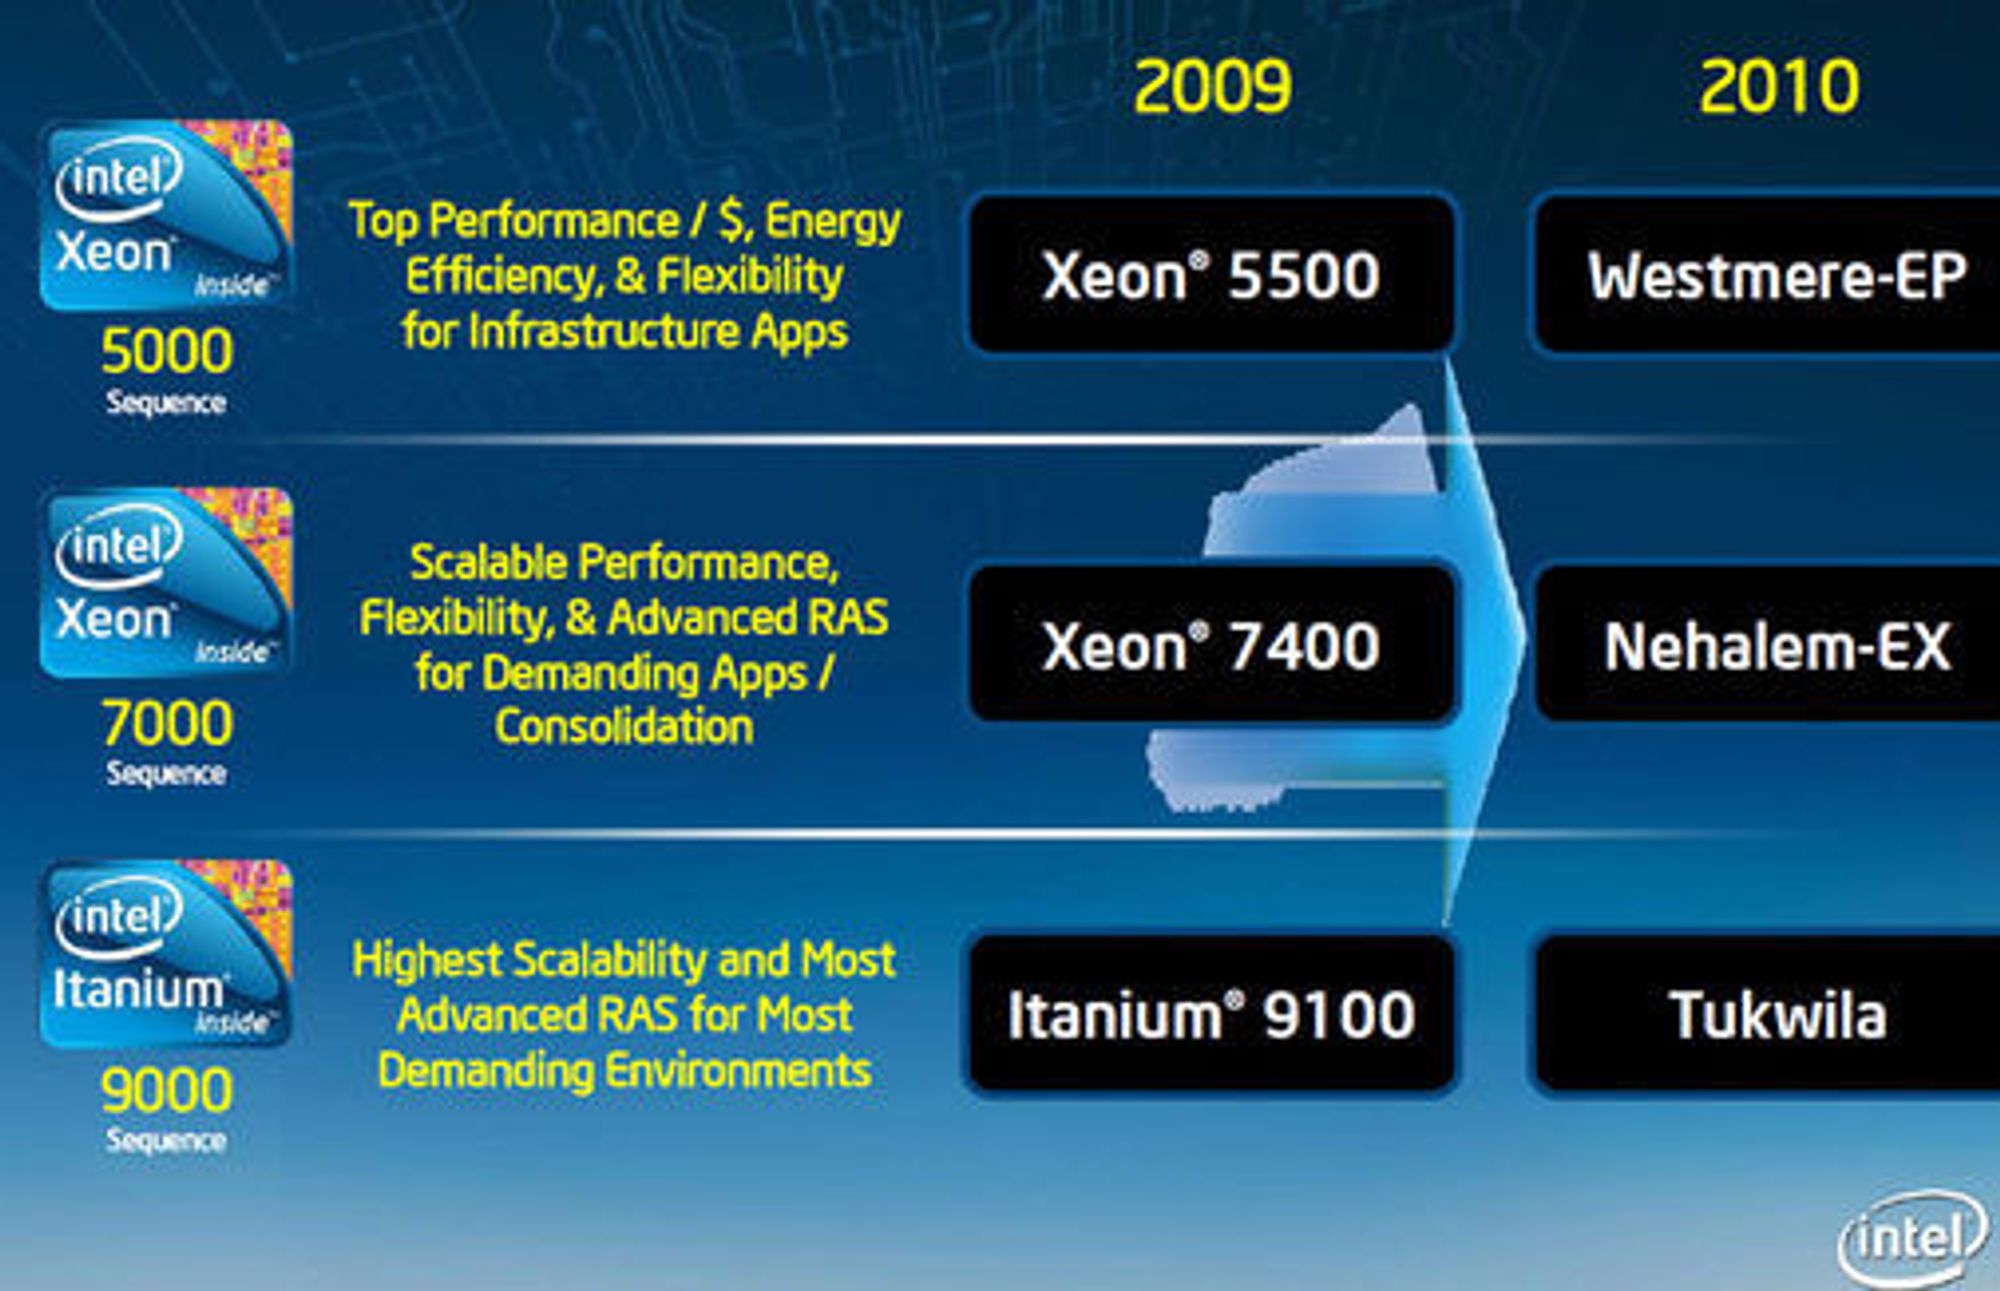 Intels serverprosessorveikart for 2009 og 2010.